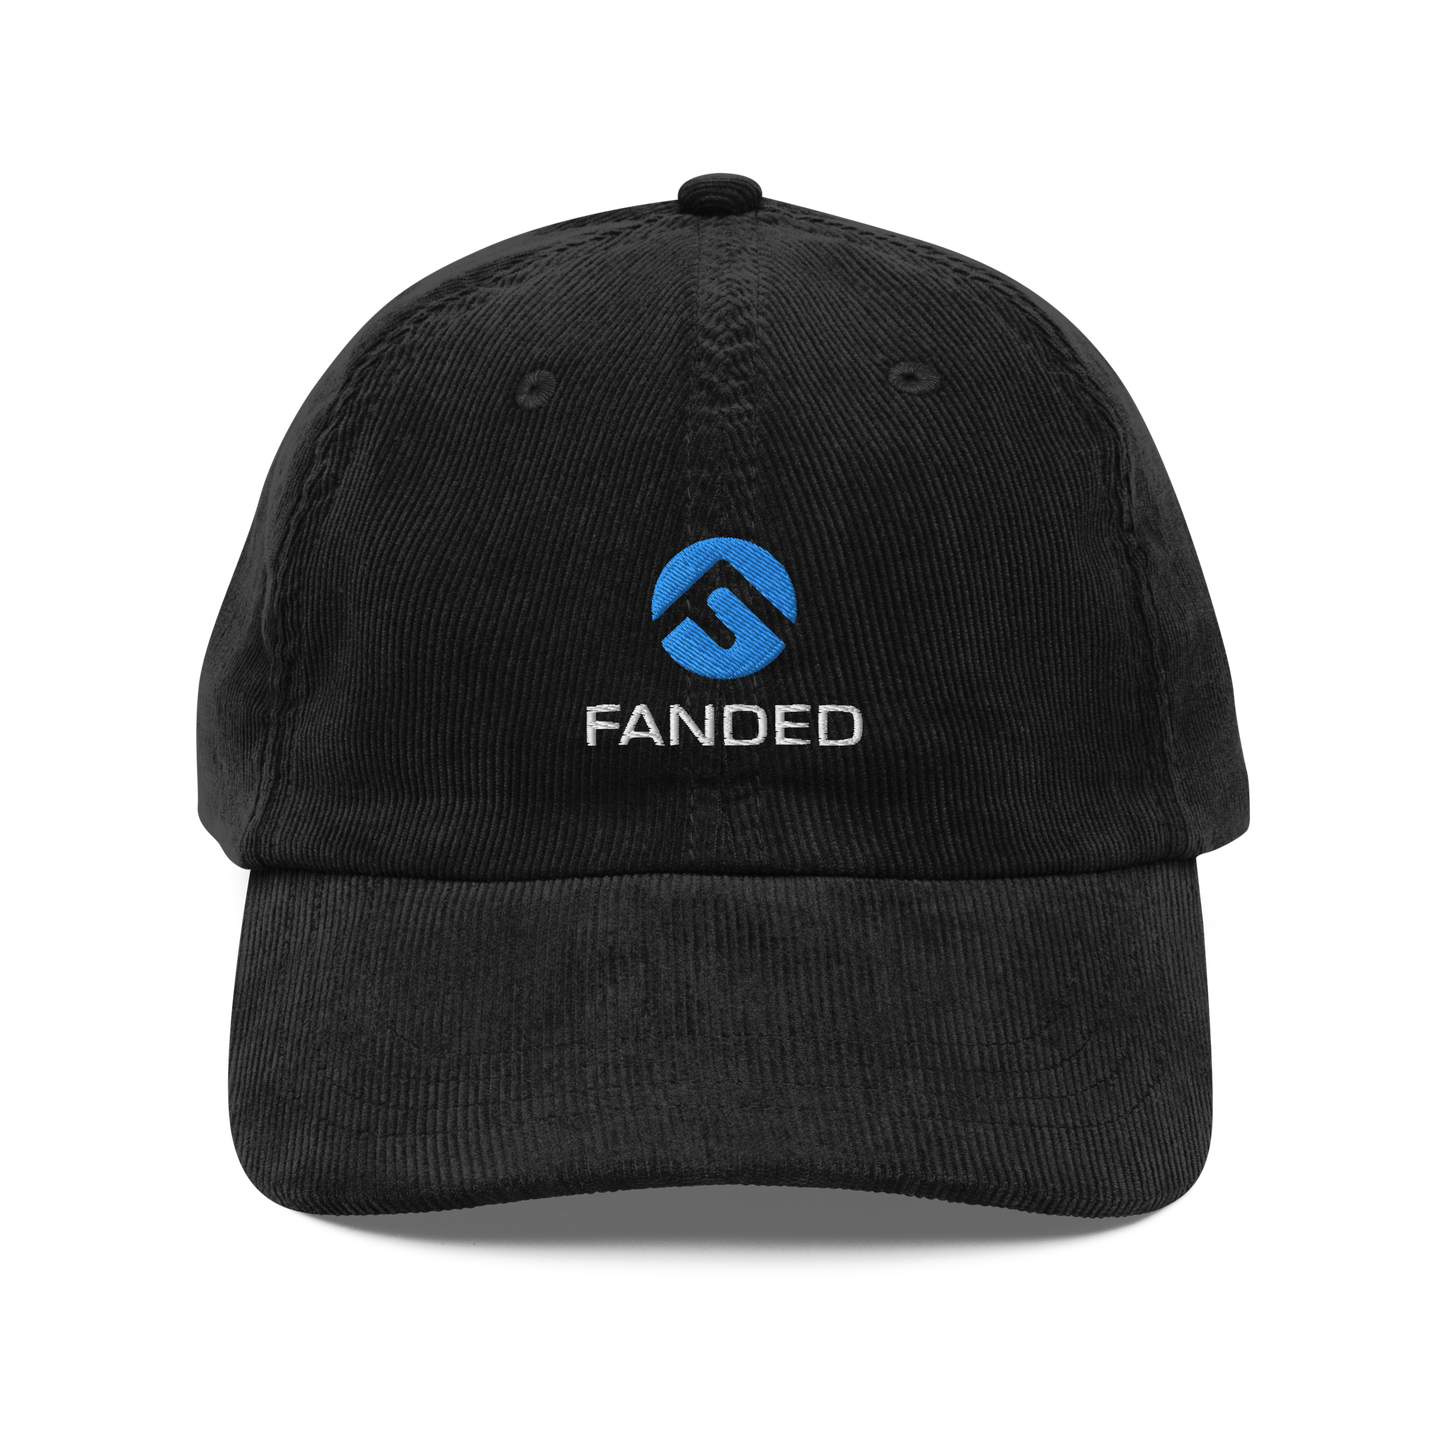 FANDED STAPLE - Vintage corduroy cap